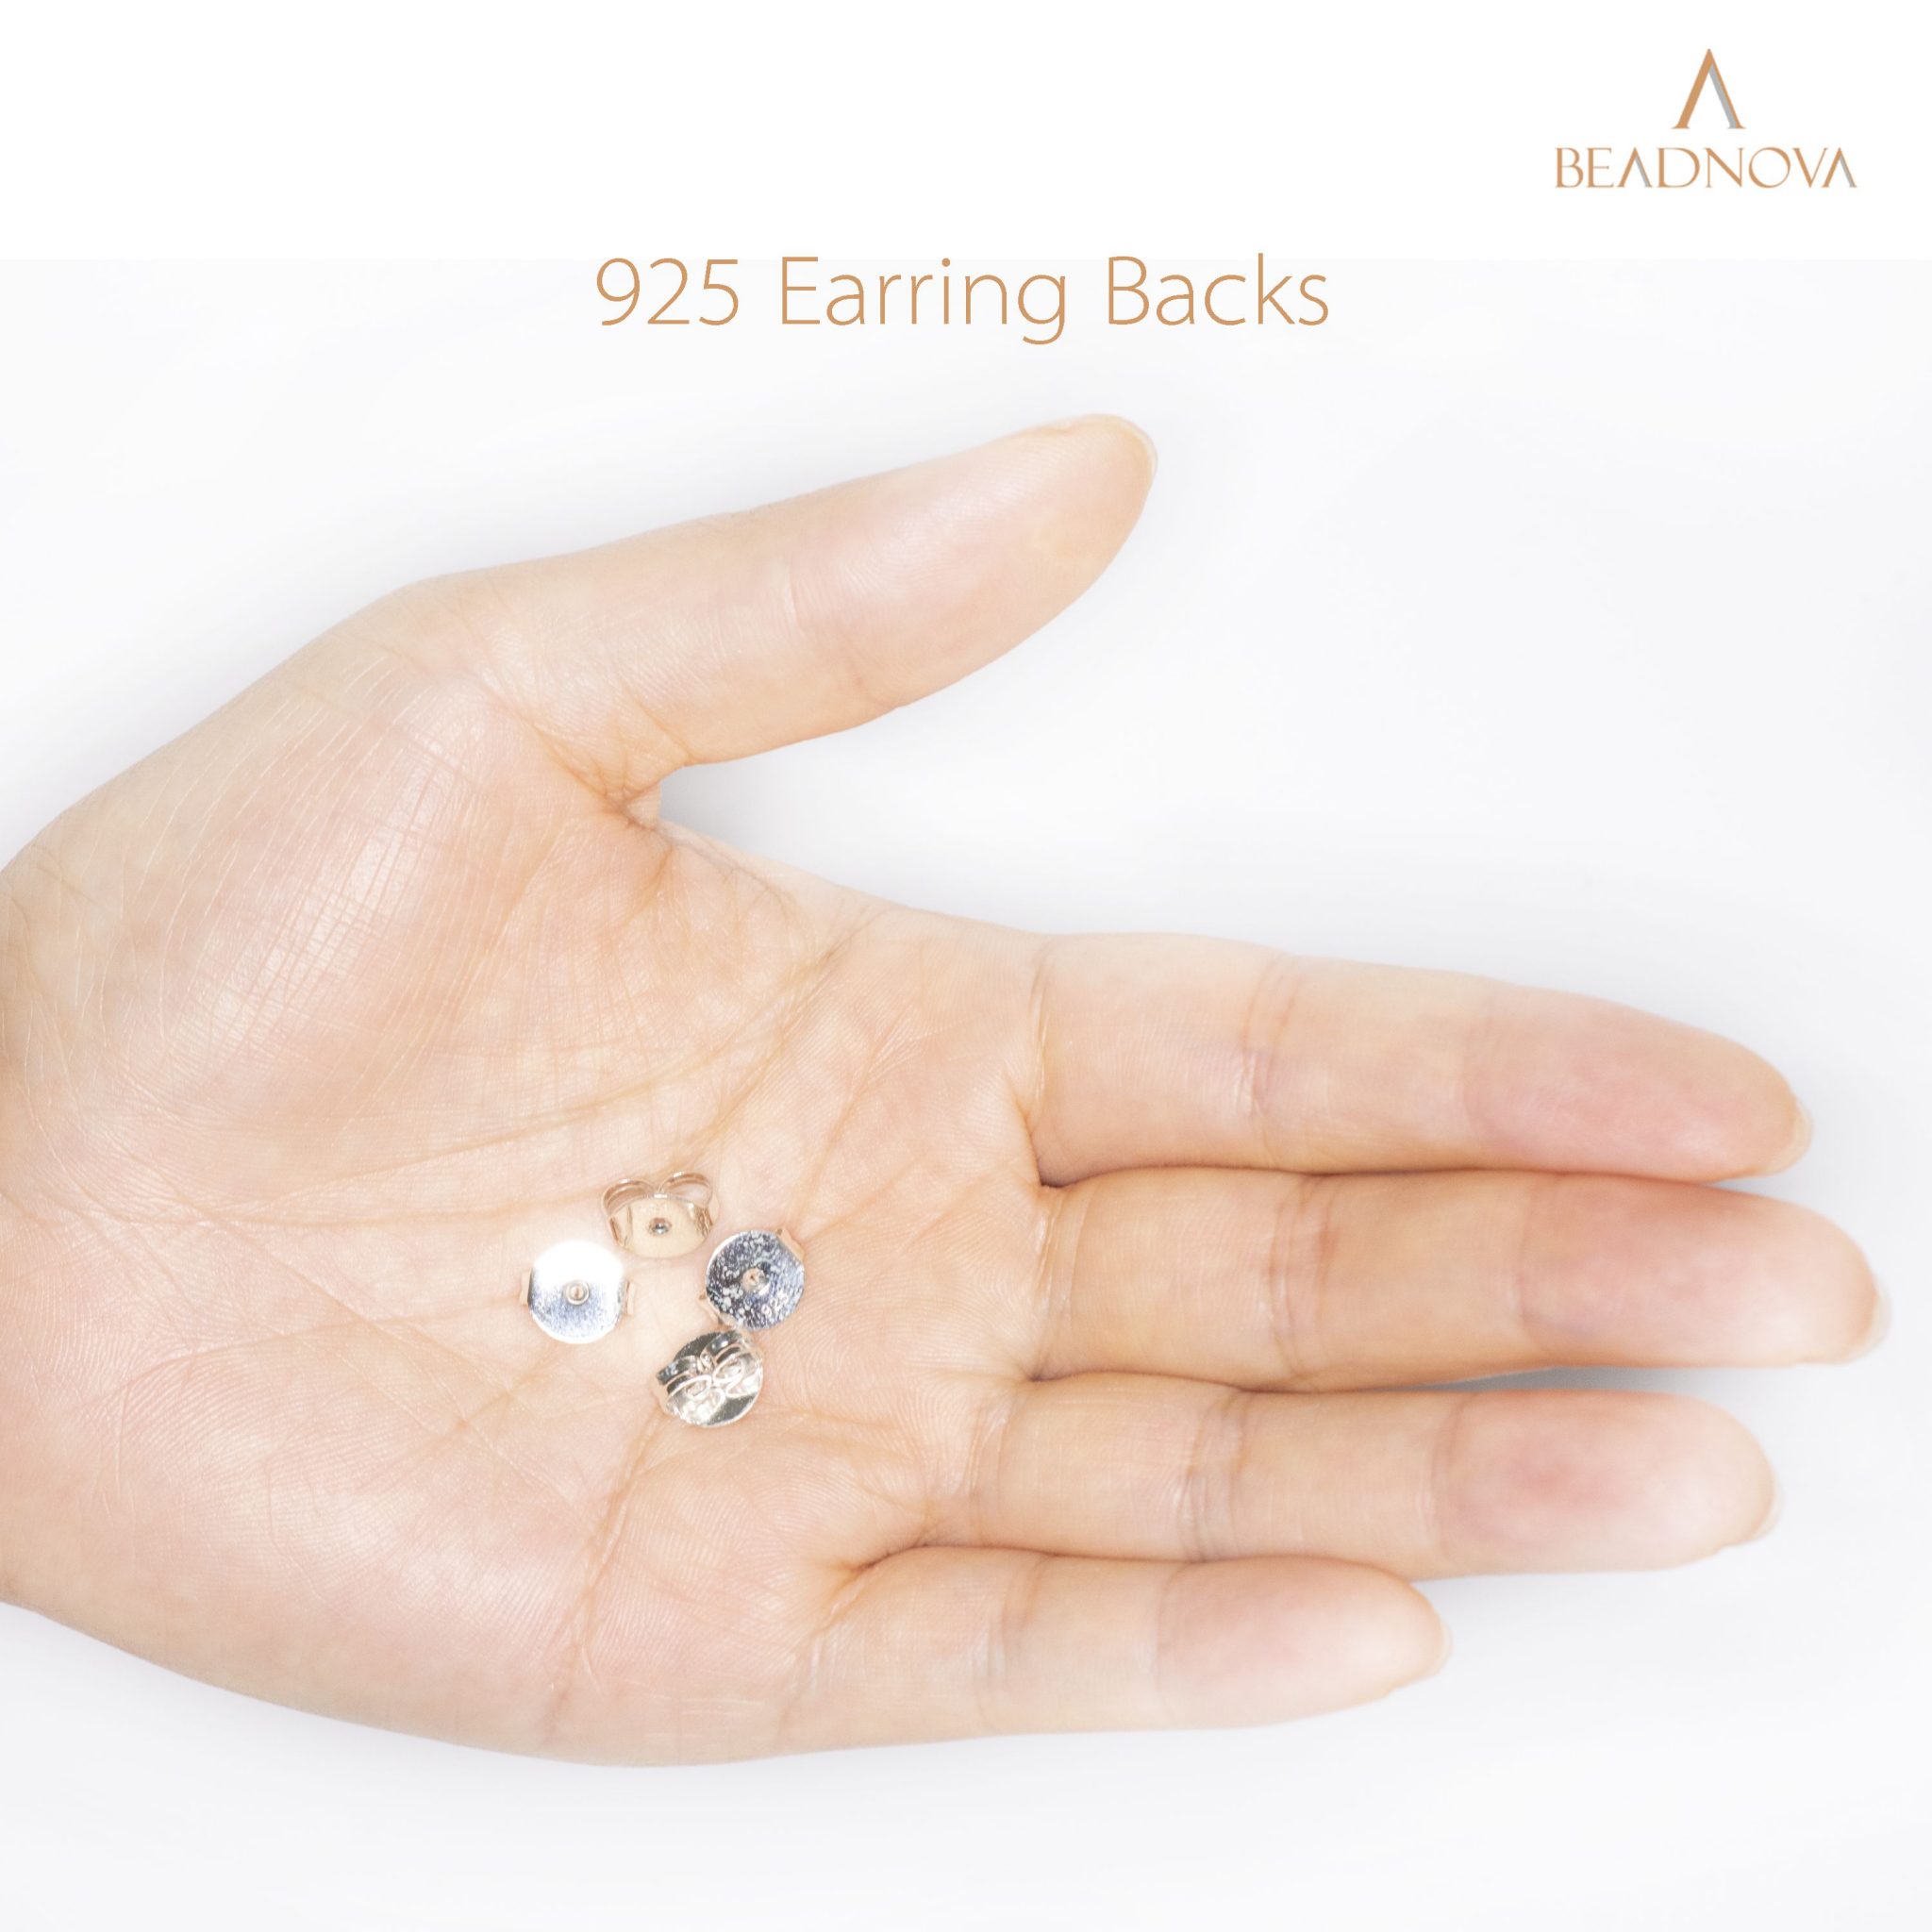 BEADNOVA Earring Backs 400pcs Stainless Steel Earring Backings for Studs  Hypoallergenic Surgical Locking Earring Backs for Posts